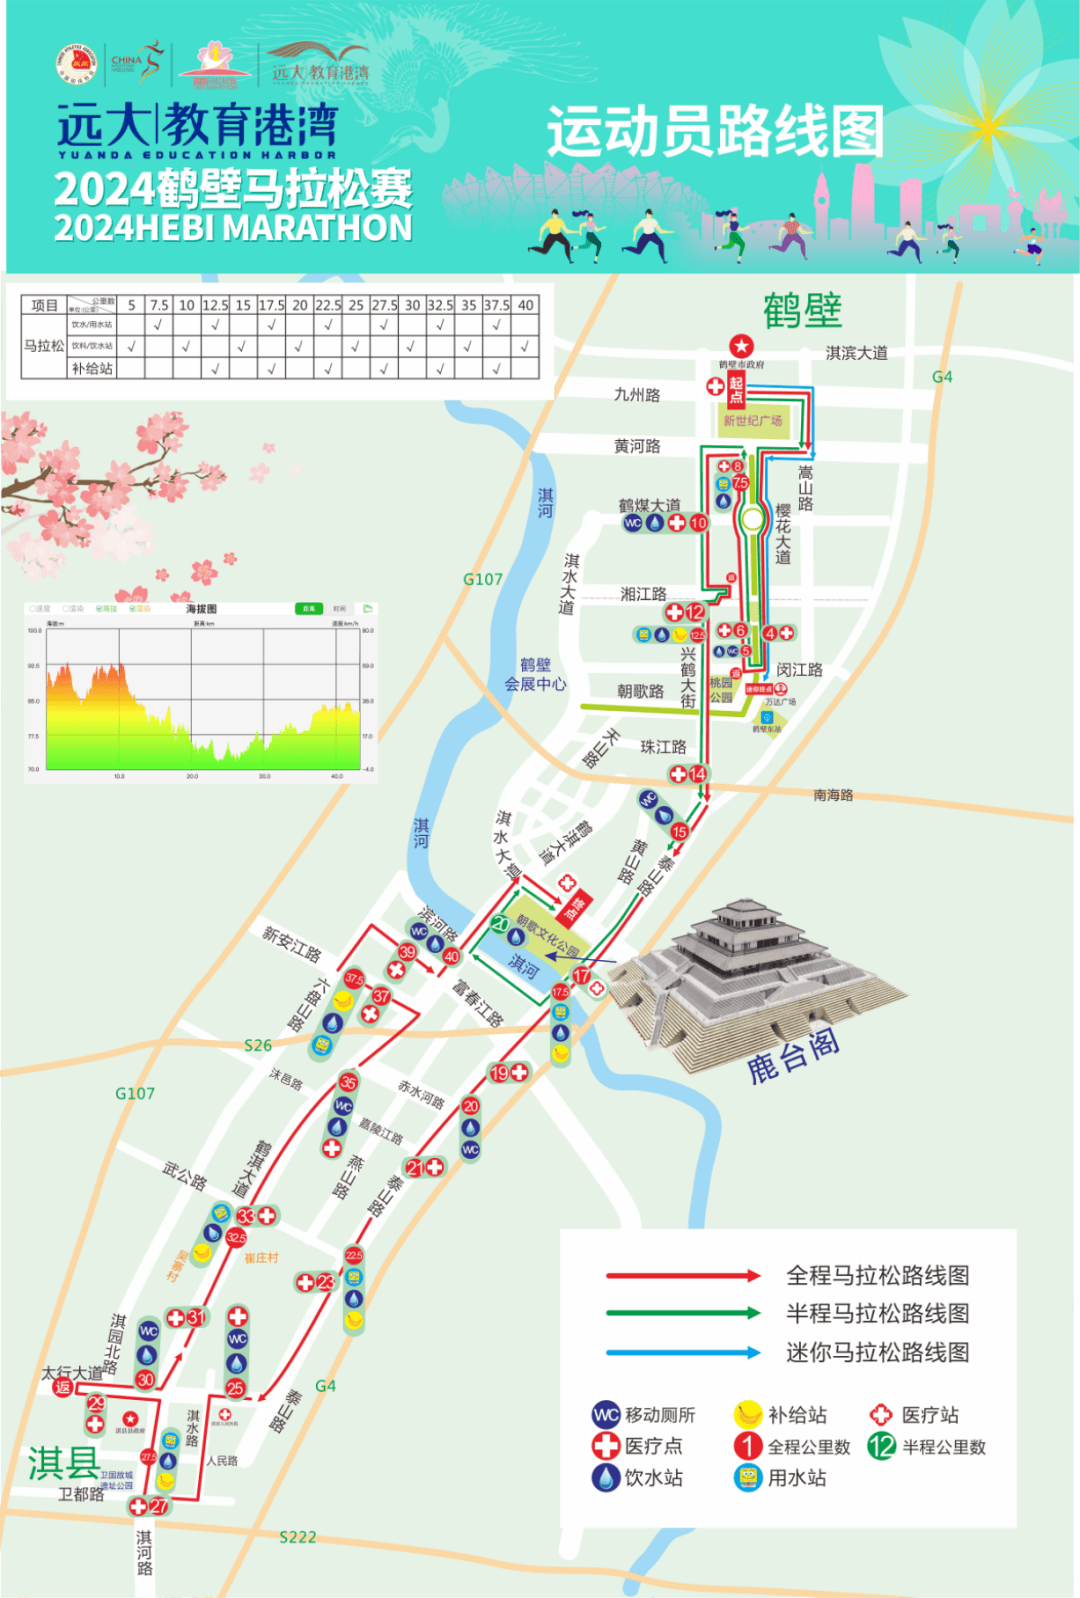 鹤壁龙岗人文小镇地图图片